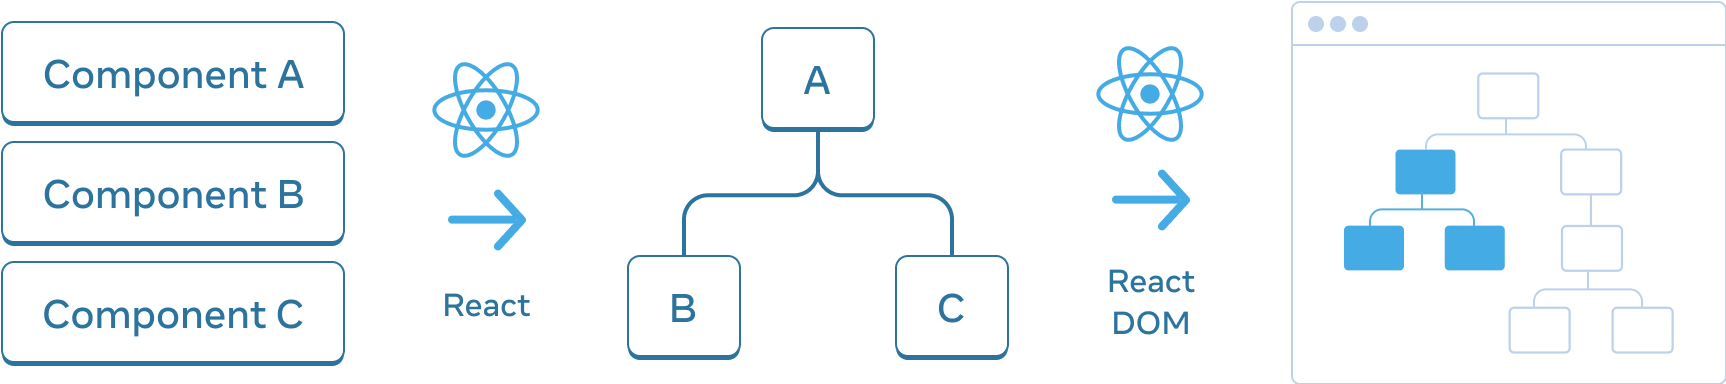 横に並んだ3つのセクションからなる図。最初のセクションには、'Component A'、'Component B'、'Component C' とラベル付けされた 3 つの長方形が縦に積み重ねられている。次のパネルへの遷移は 'React' とラベル付けされた React ロゴが上にある矢印で示されている。中央セクションには、ルートが 'A' で子が 'B' と 'C' のラベルが付いたコンポーネントのツリーがある。次のセクションへの遷移も、'React' とラベル付けされた React ロゴが上にある矢印で示されている。最後である 3 つ目のセクションは、8 つのノードからなるツリーを含むブラウザのワイヤーフレームで、そのうちの一部だけが強調表示され、中央のセクションからのサブツリーを示している。